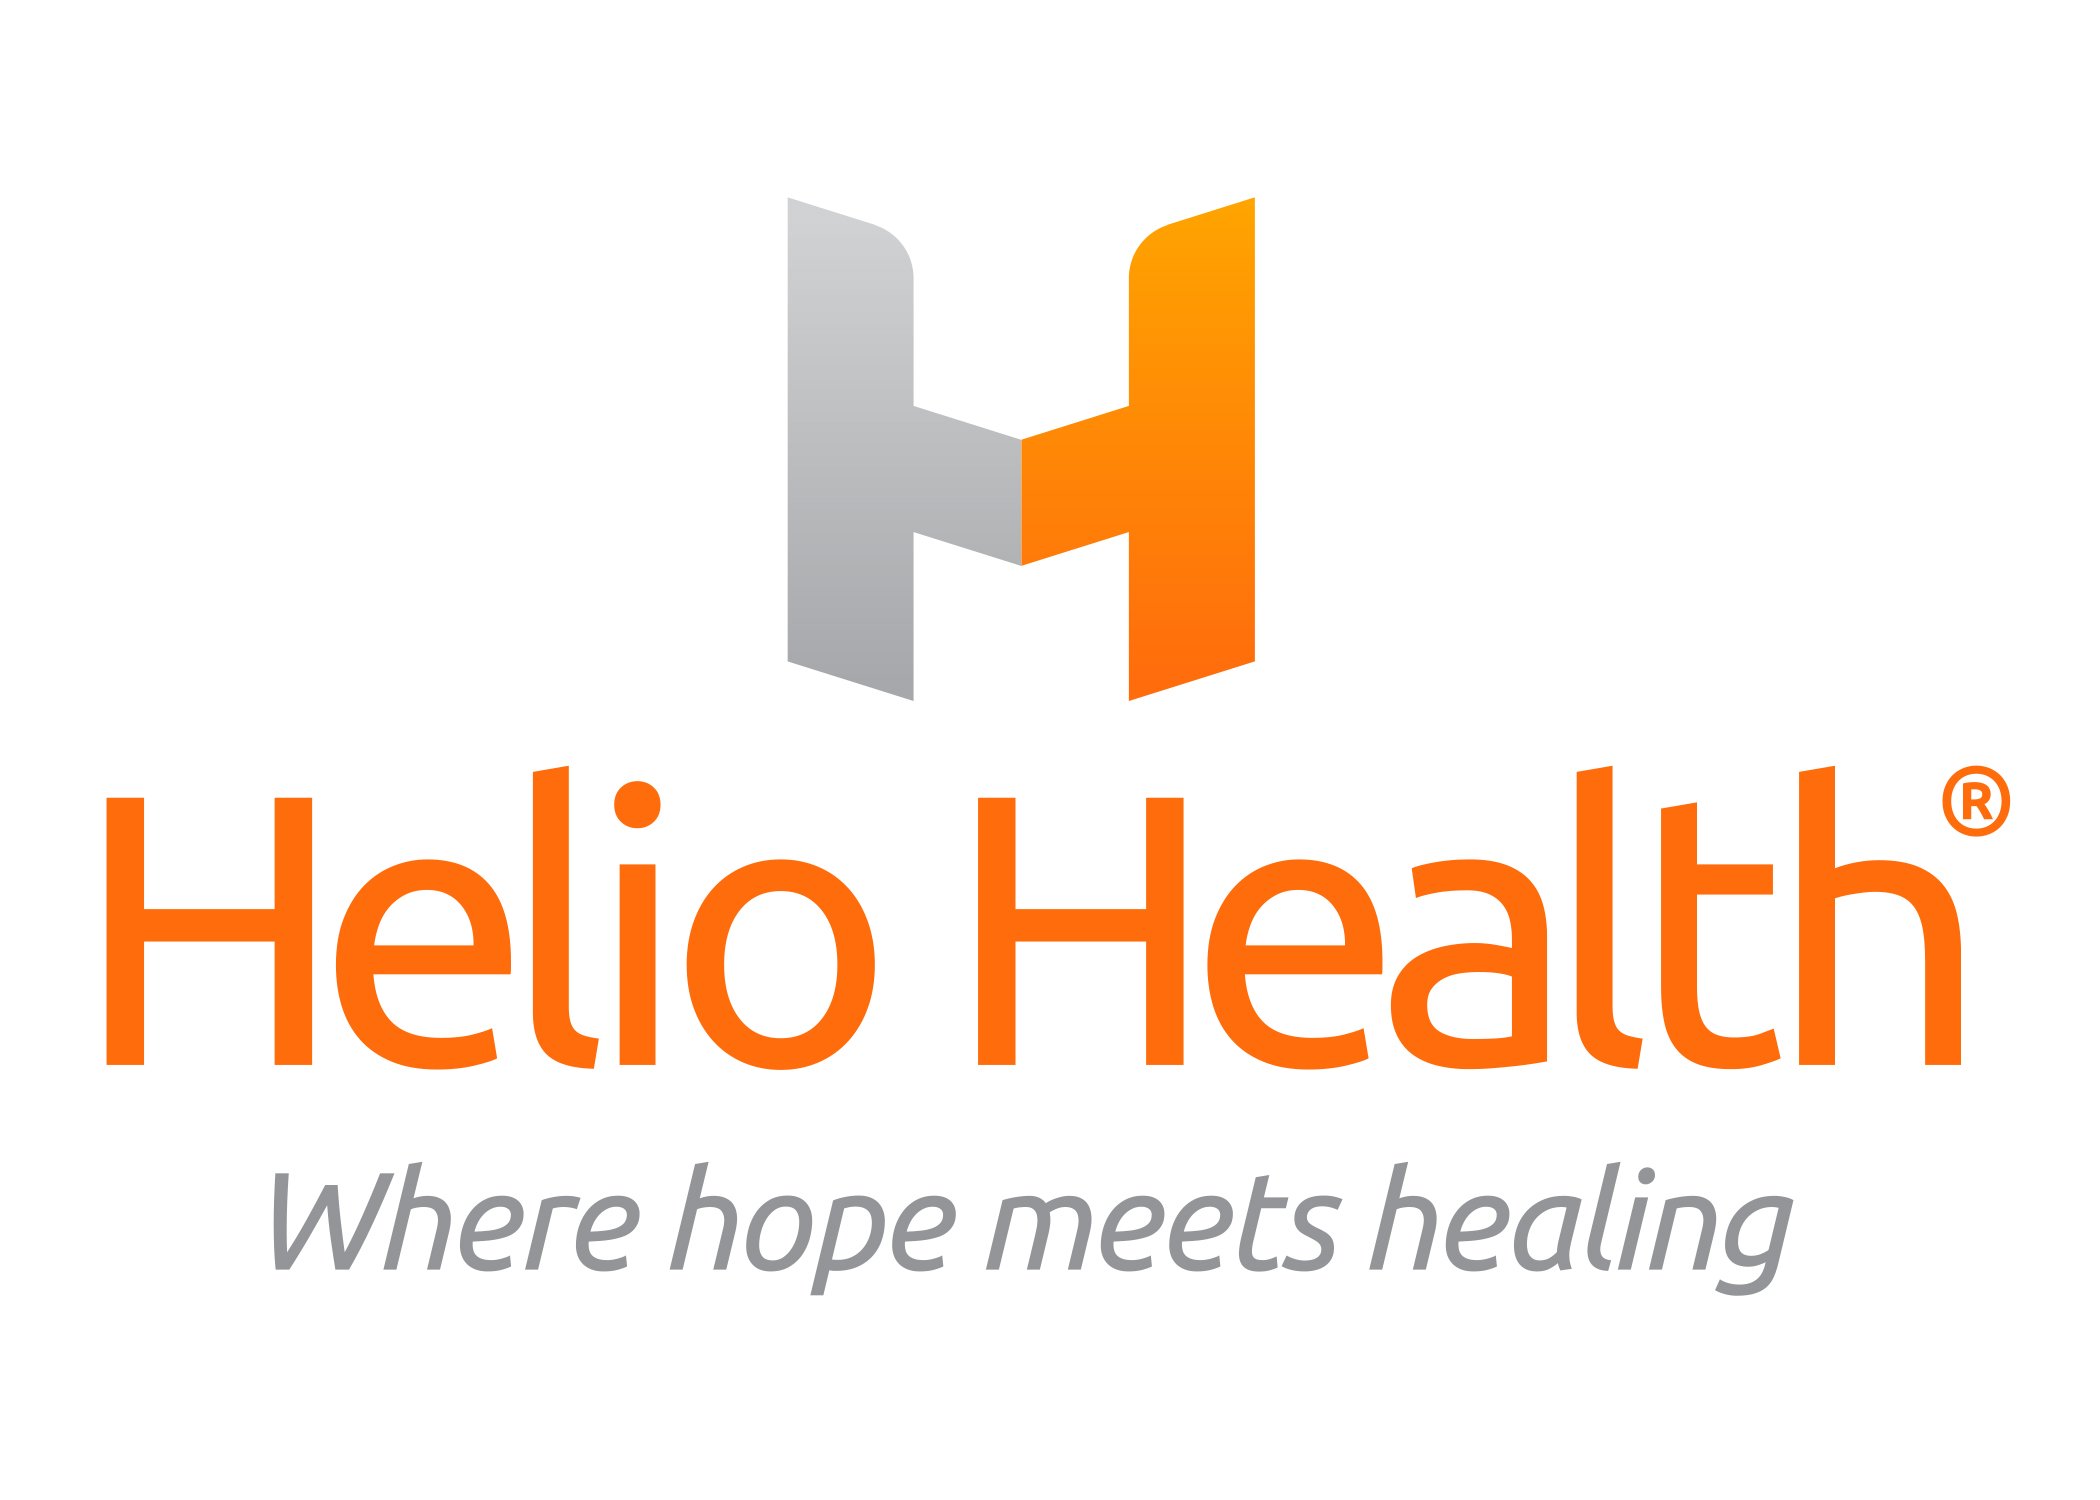 helio health